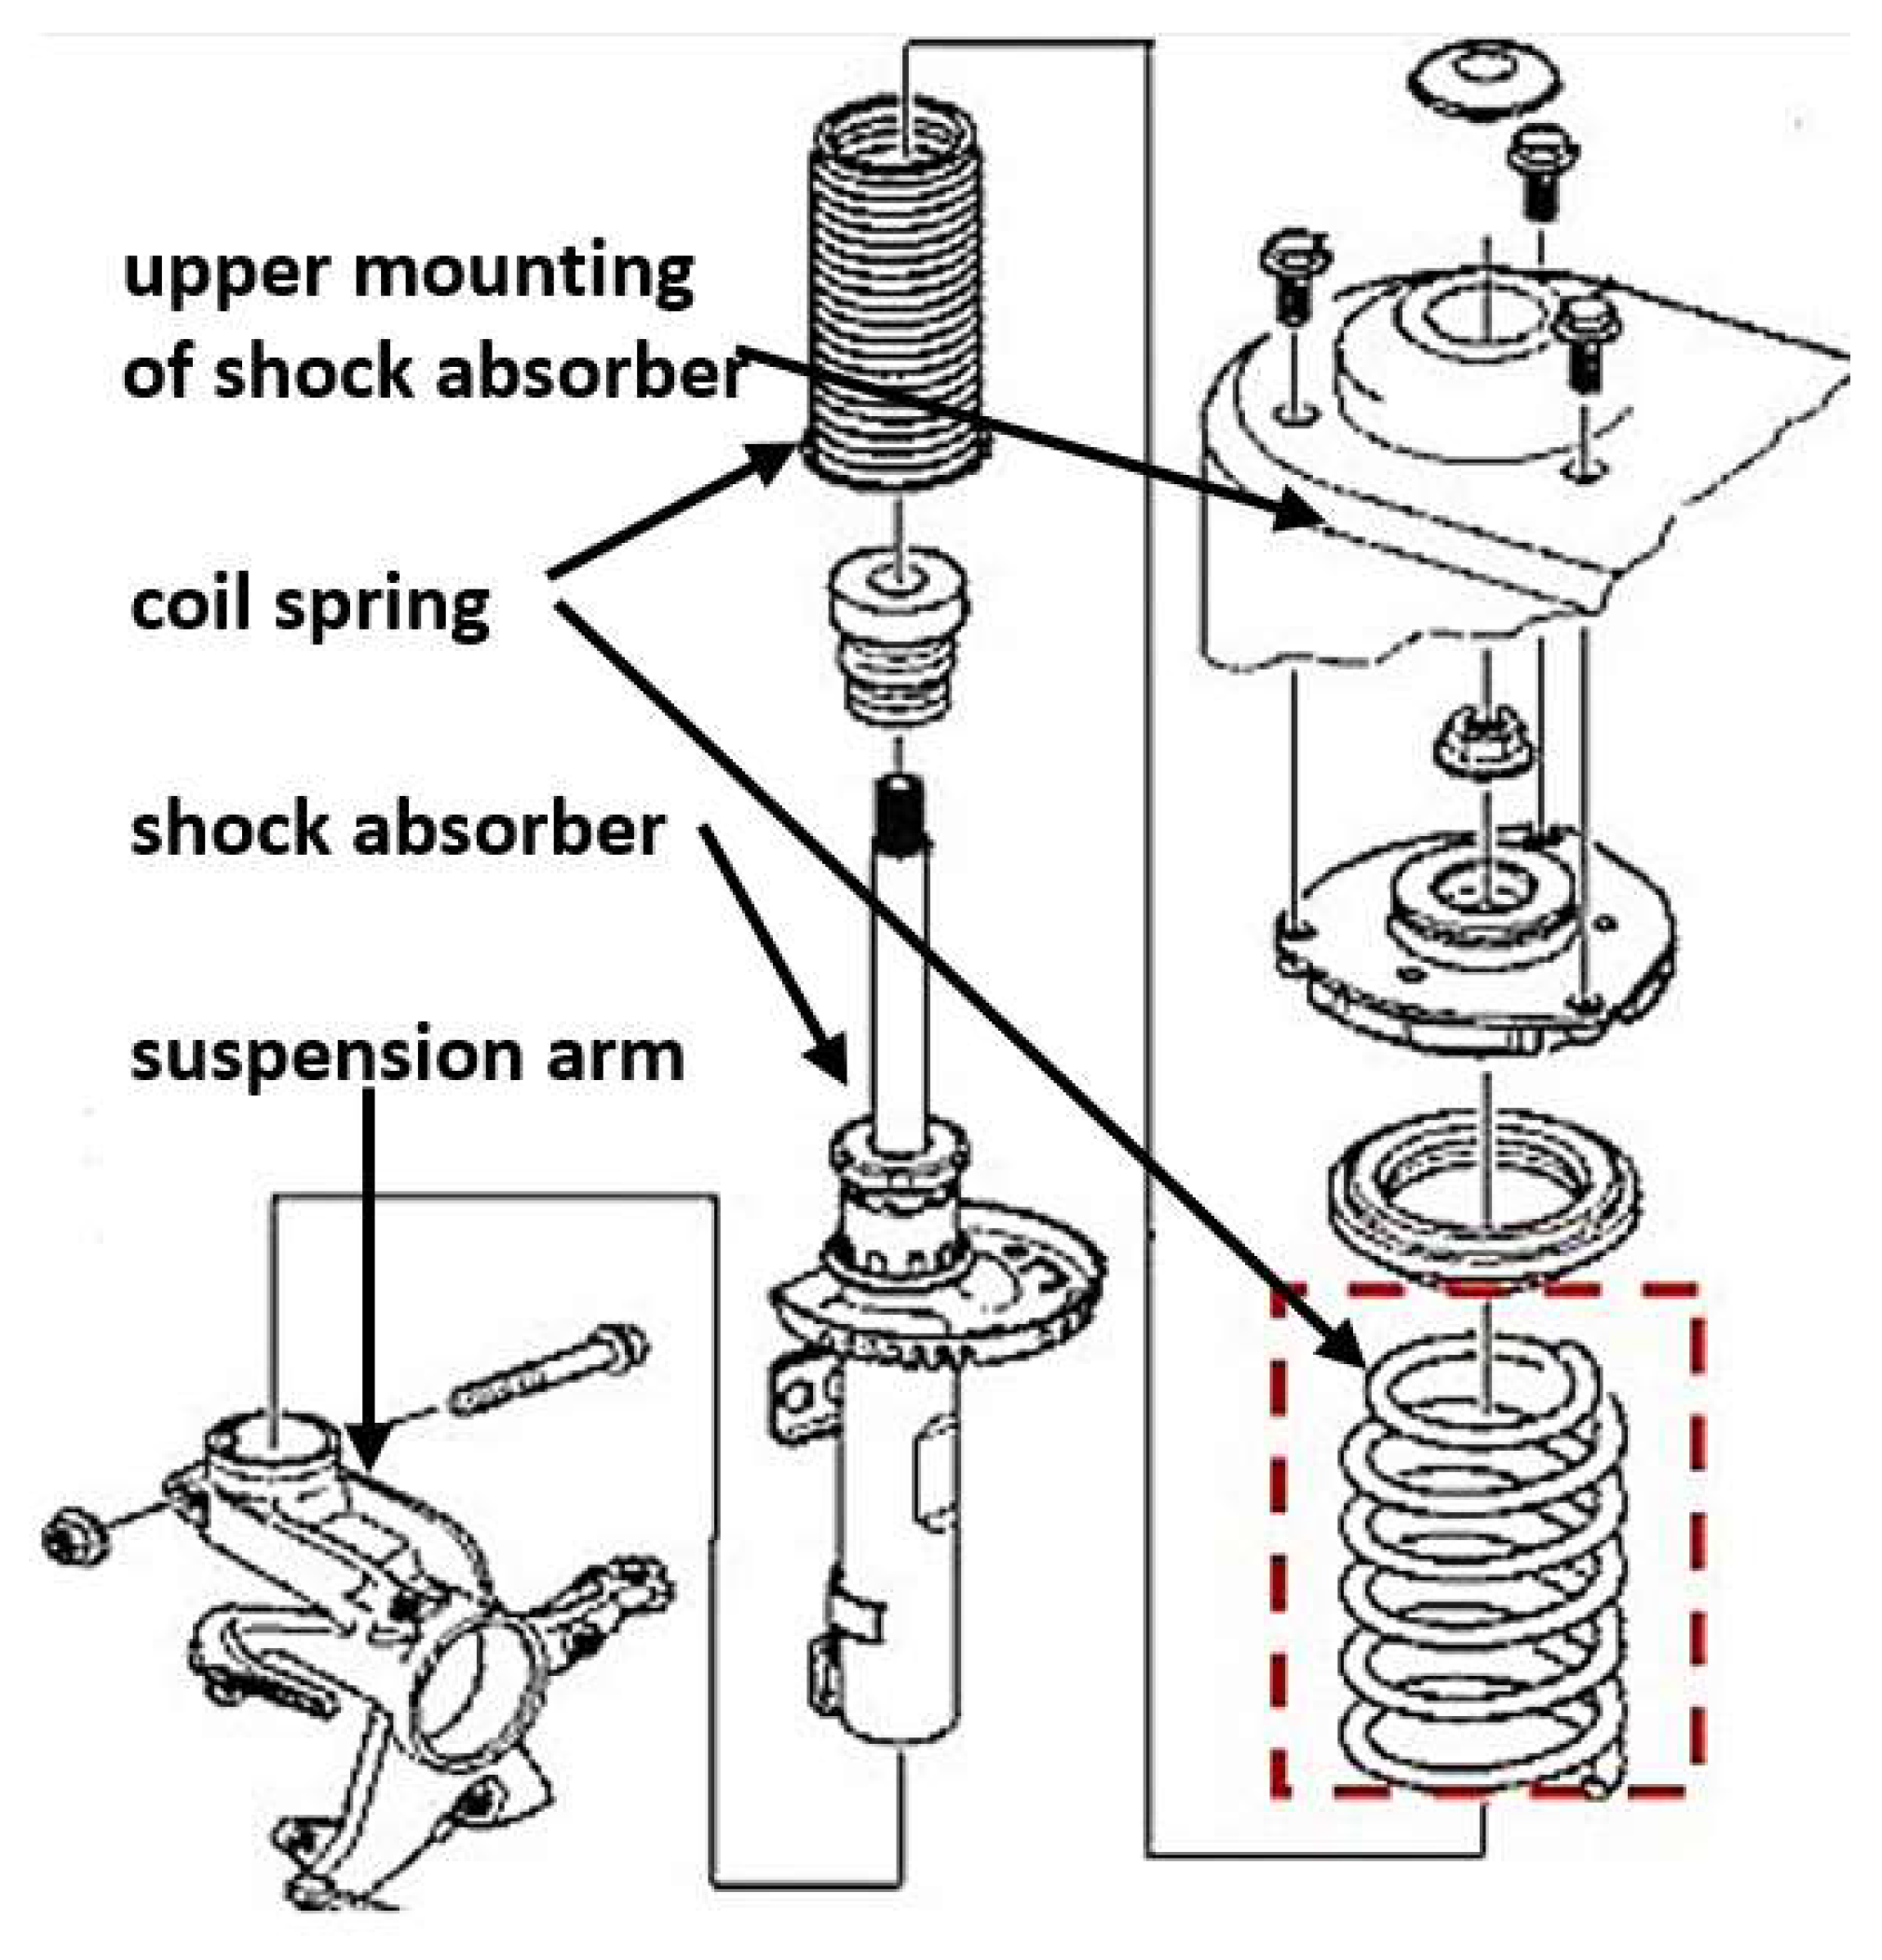 Shock absorber, Suspension, Dampening & Vibration